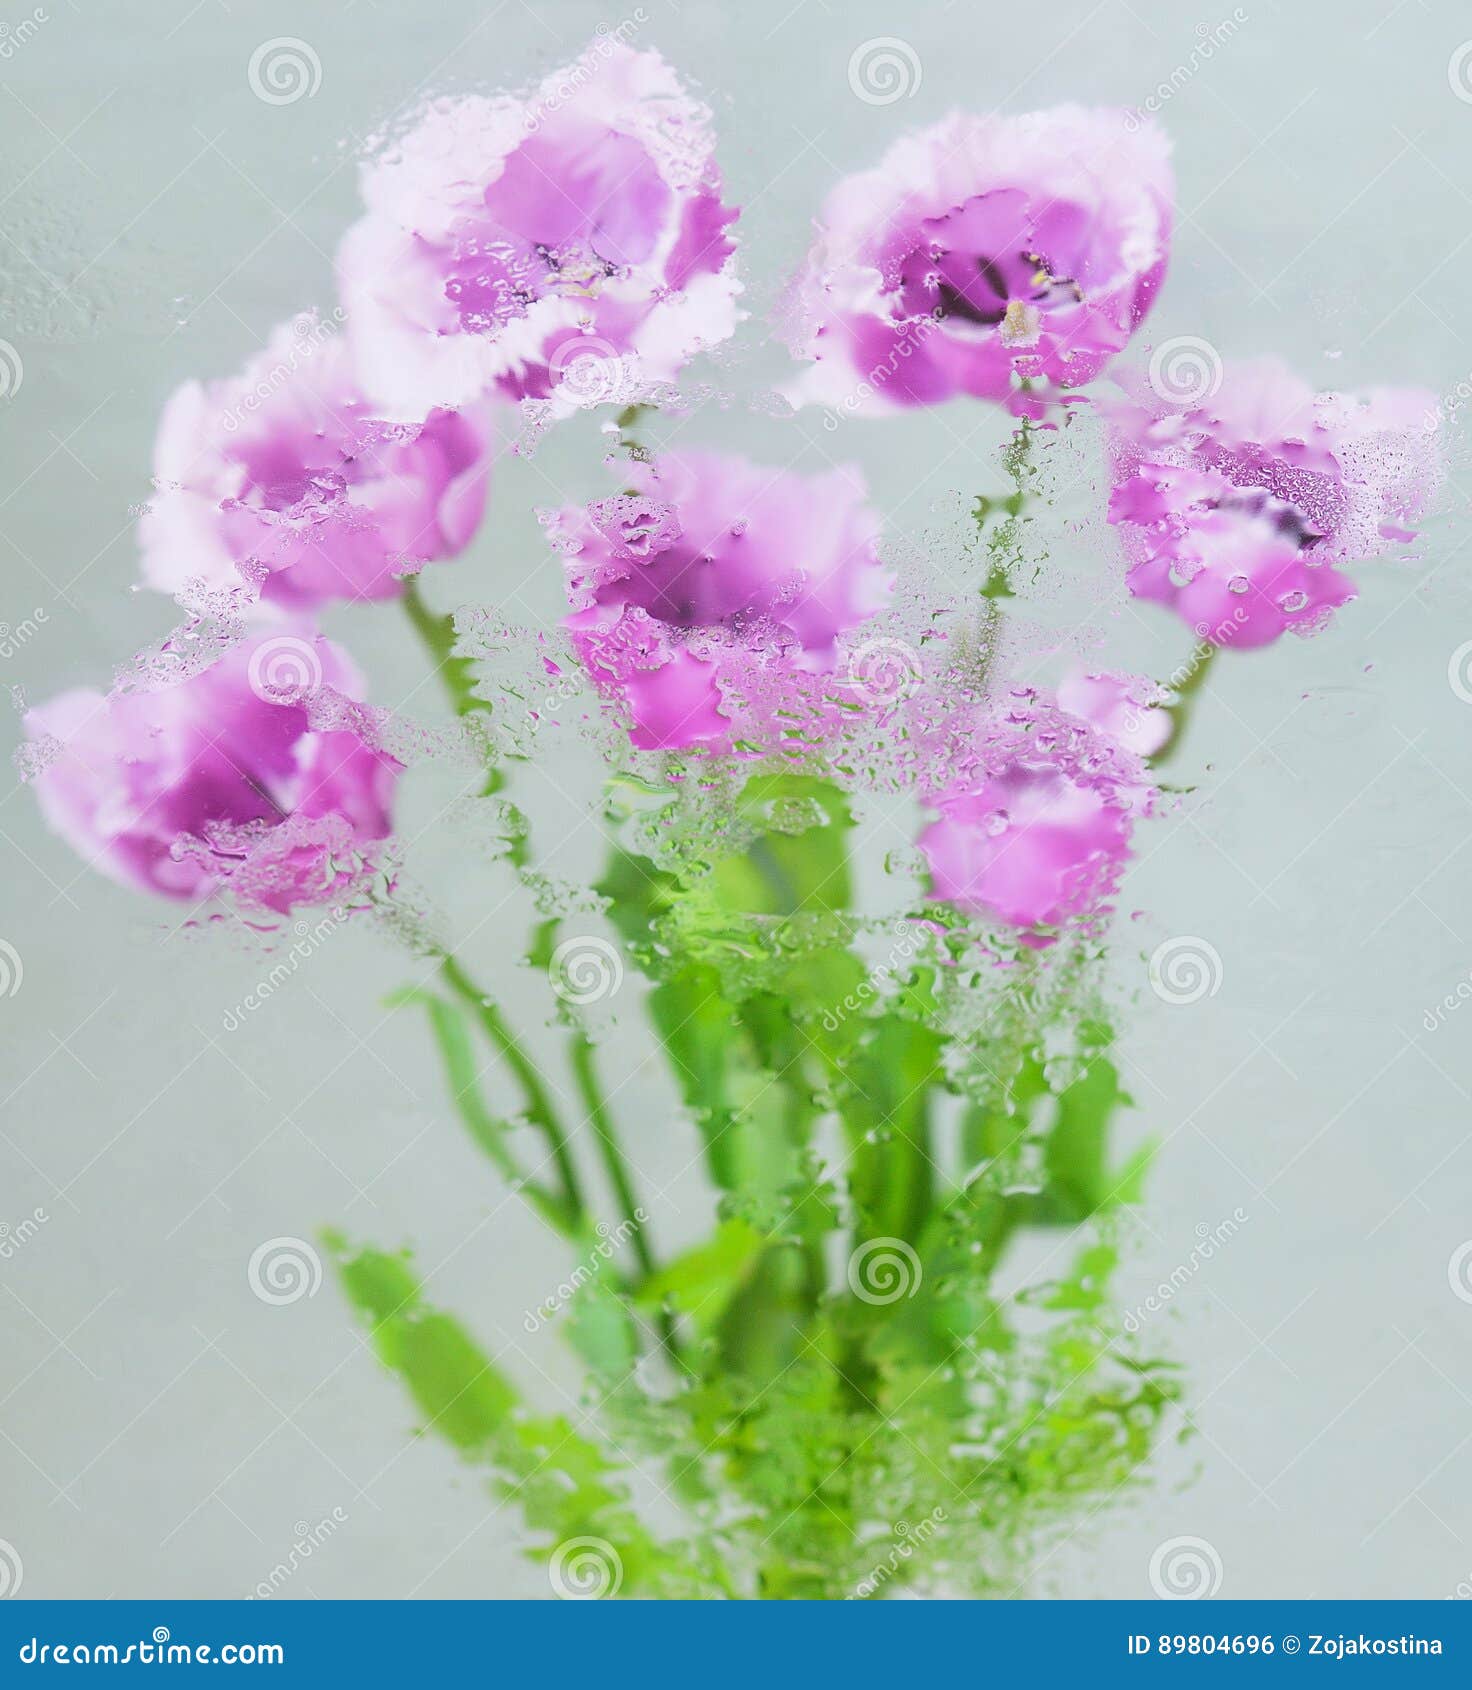 Fruhlingsblumen Unter Wasser Stockfoto Bild Von Wasser Fruhlingsblumen 89804696